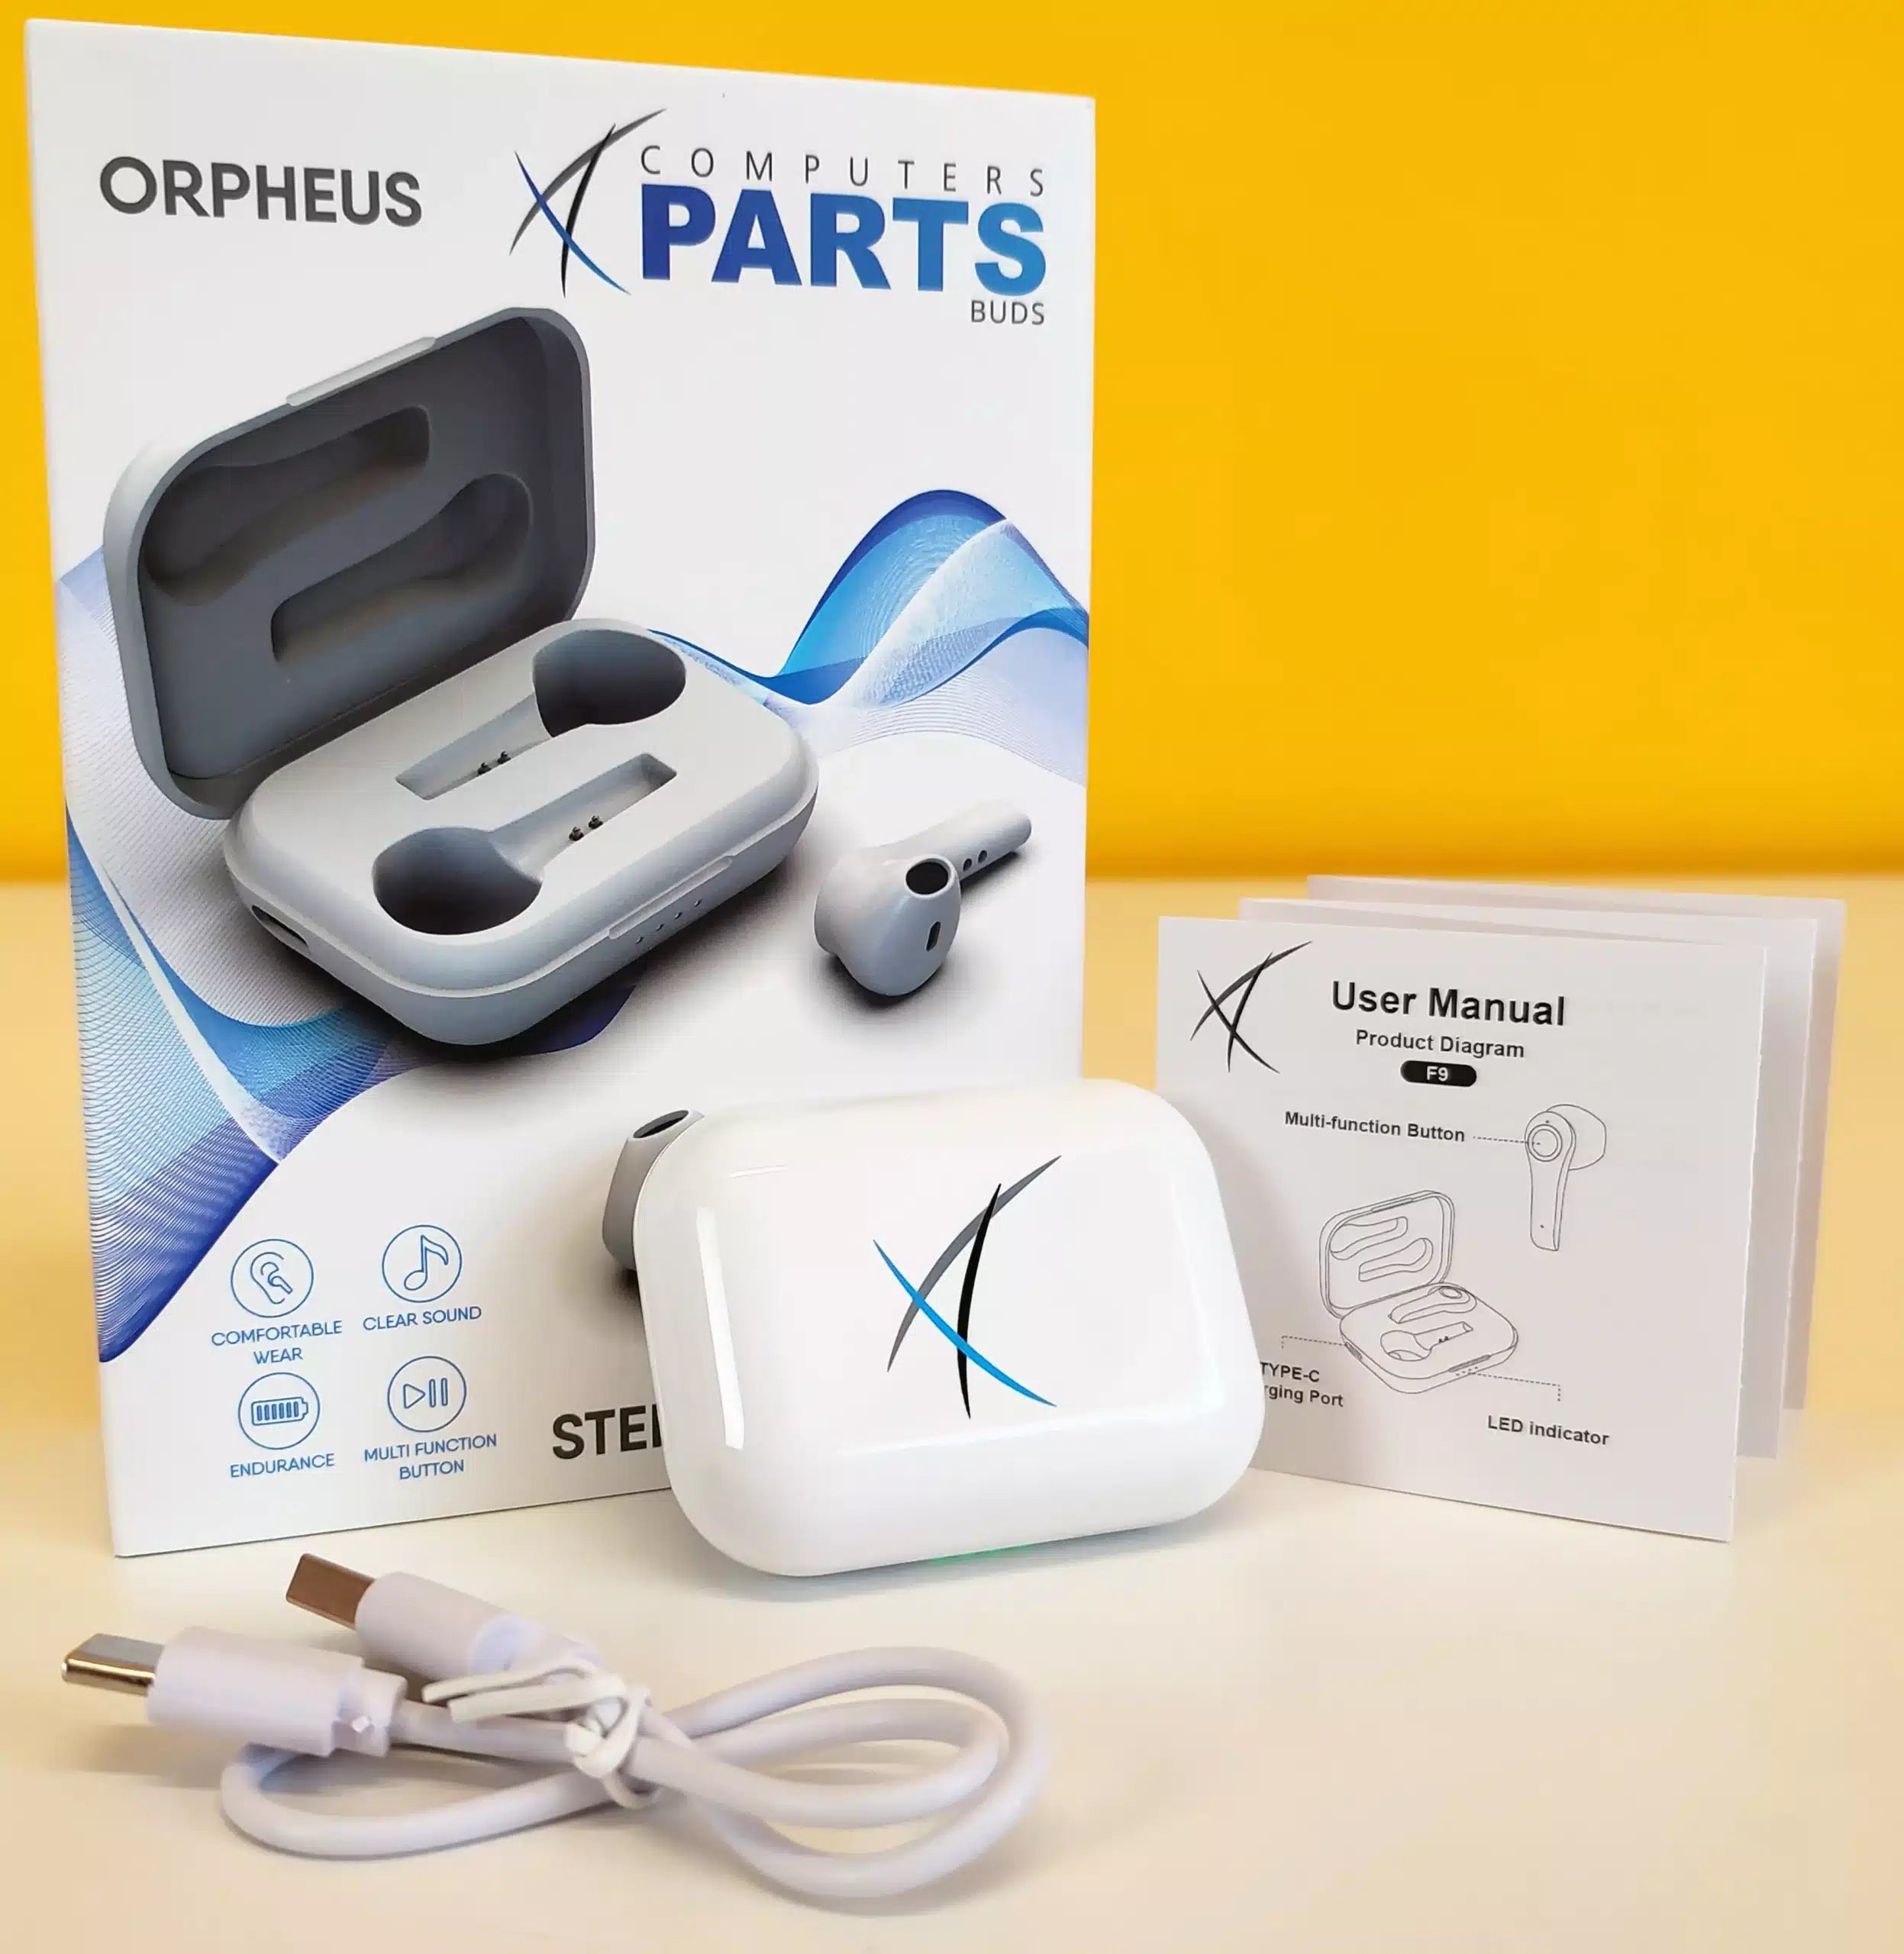 Orpheus Auricolari Wireless Stereo Bluetooth Cuffie Ascolta la tua musica preferita in alta qualità e senza fili